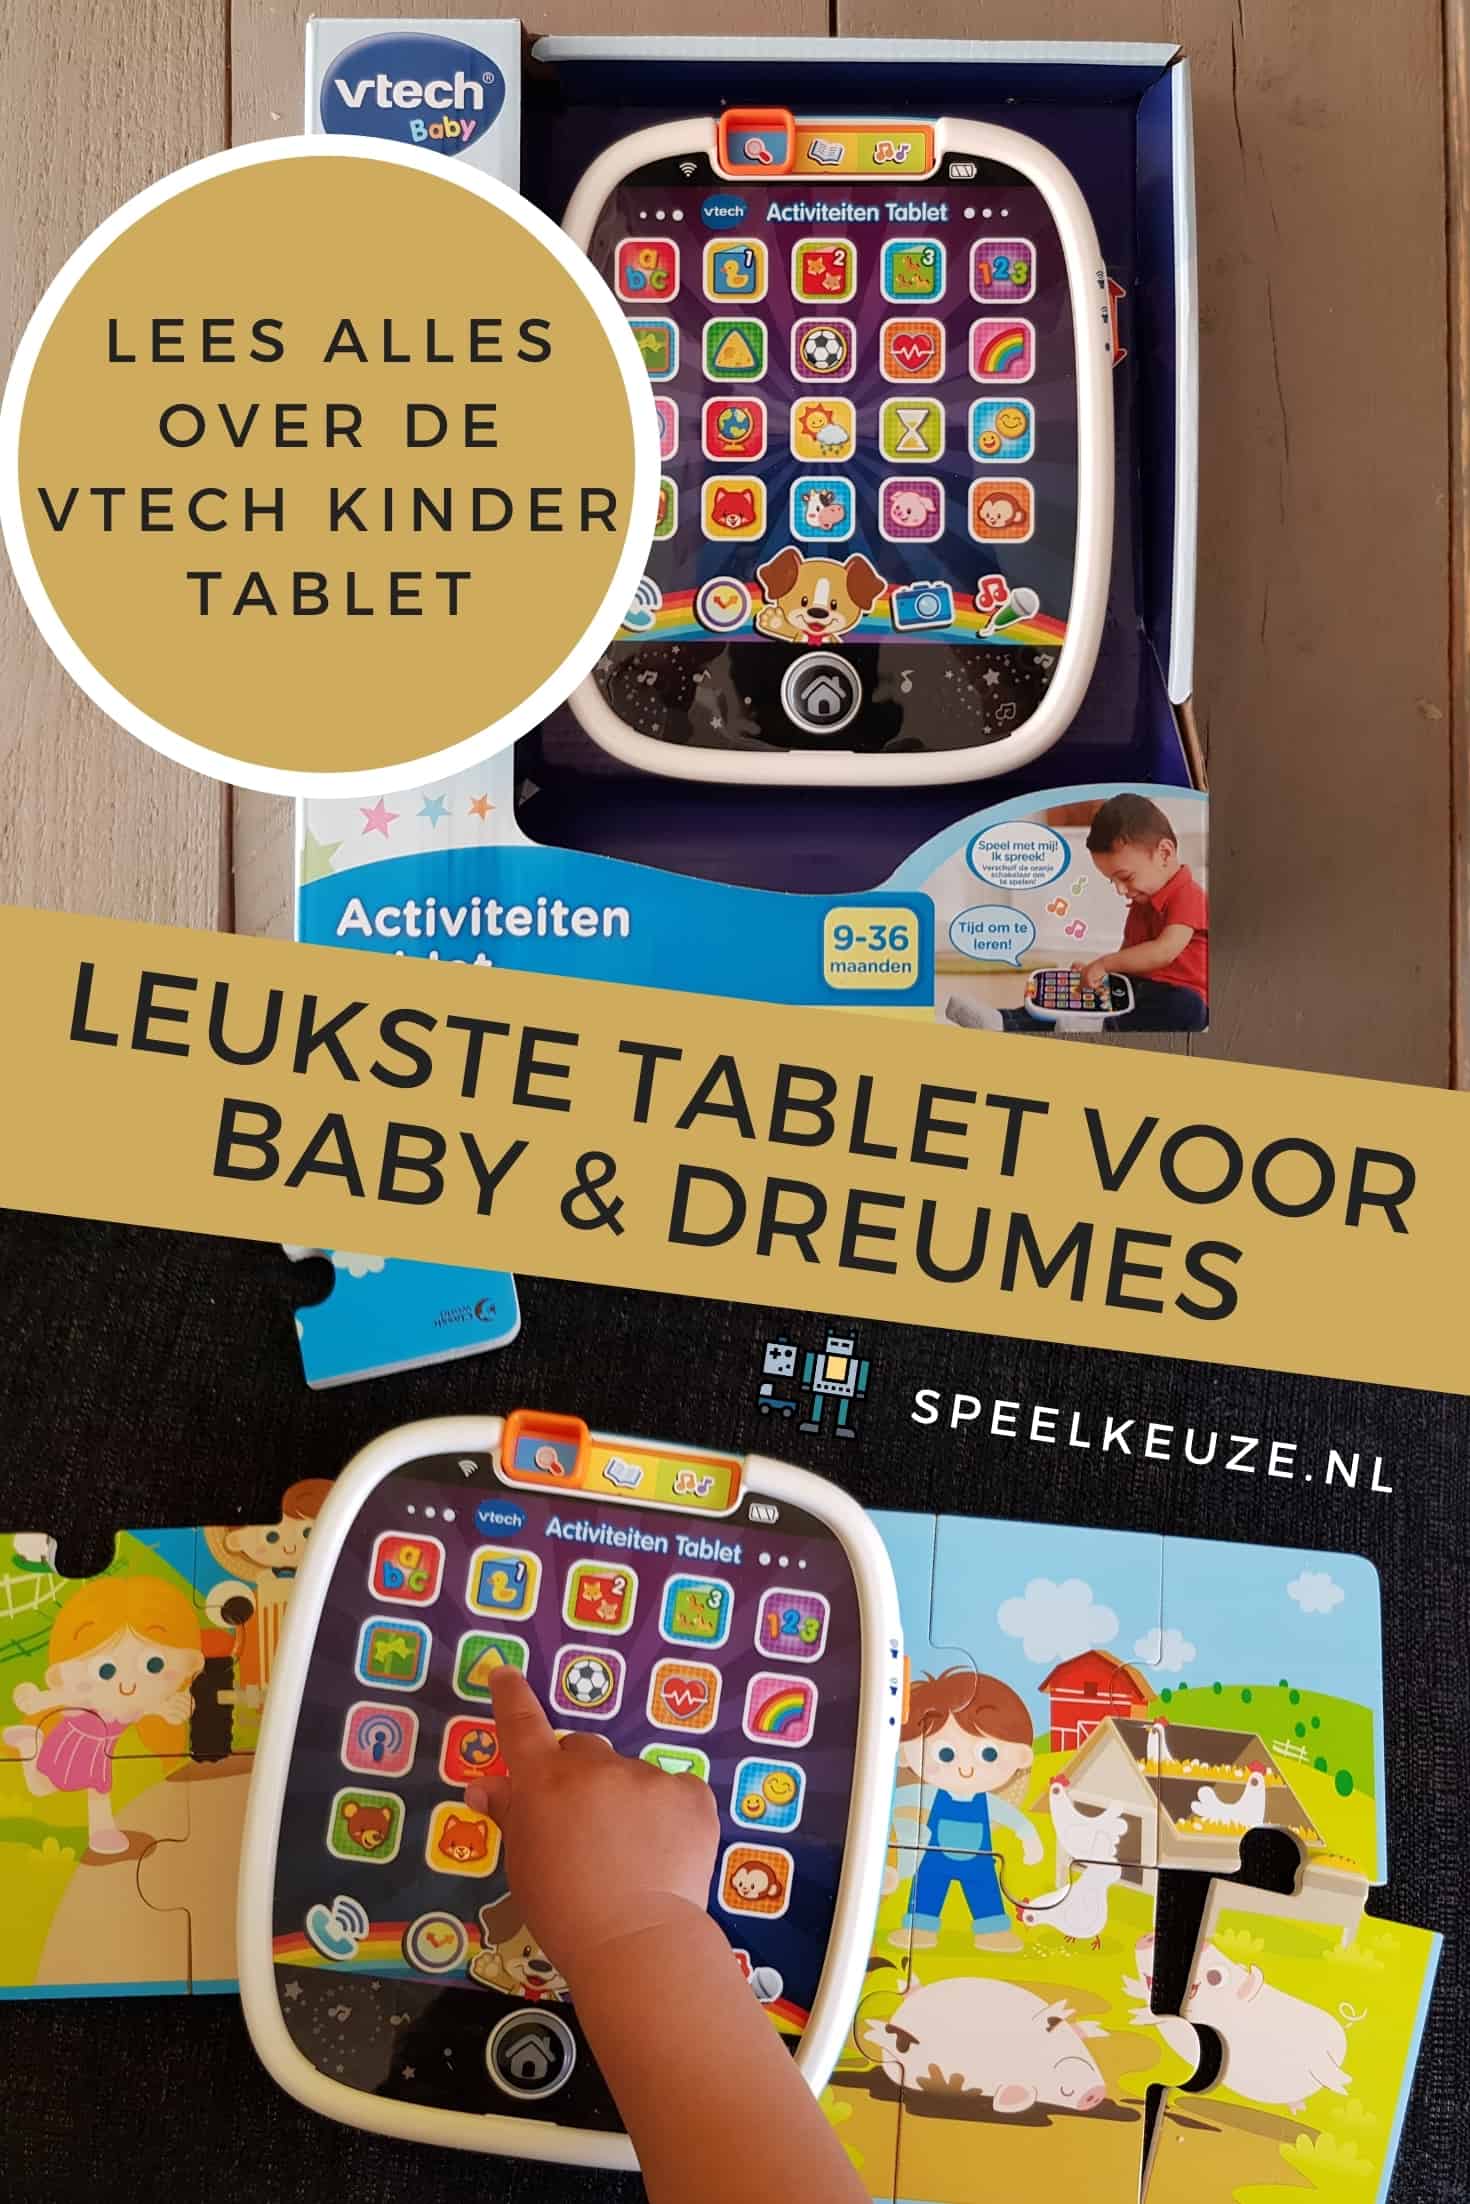 La mejor tableta para bebés y niños pequeños